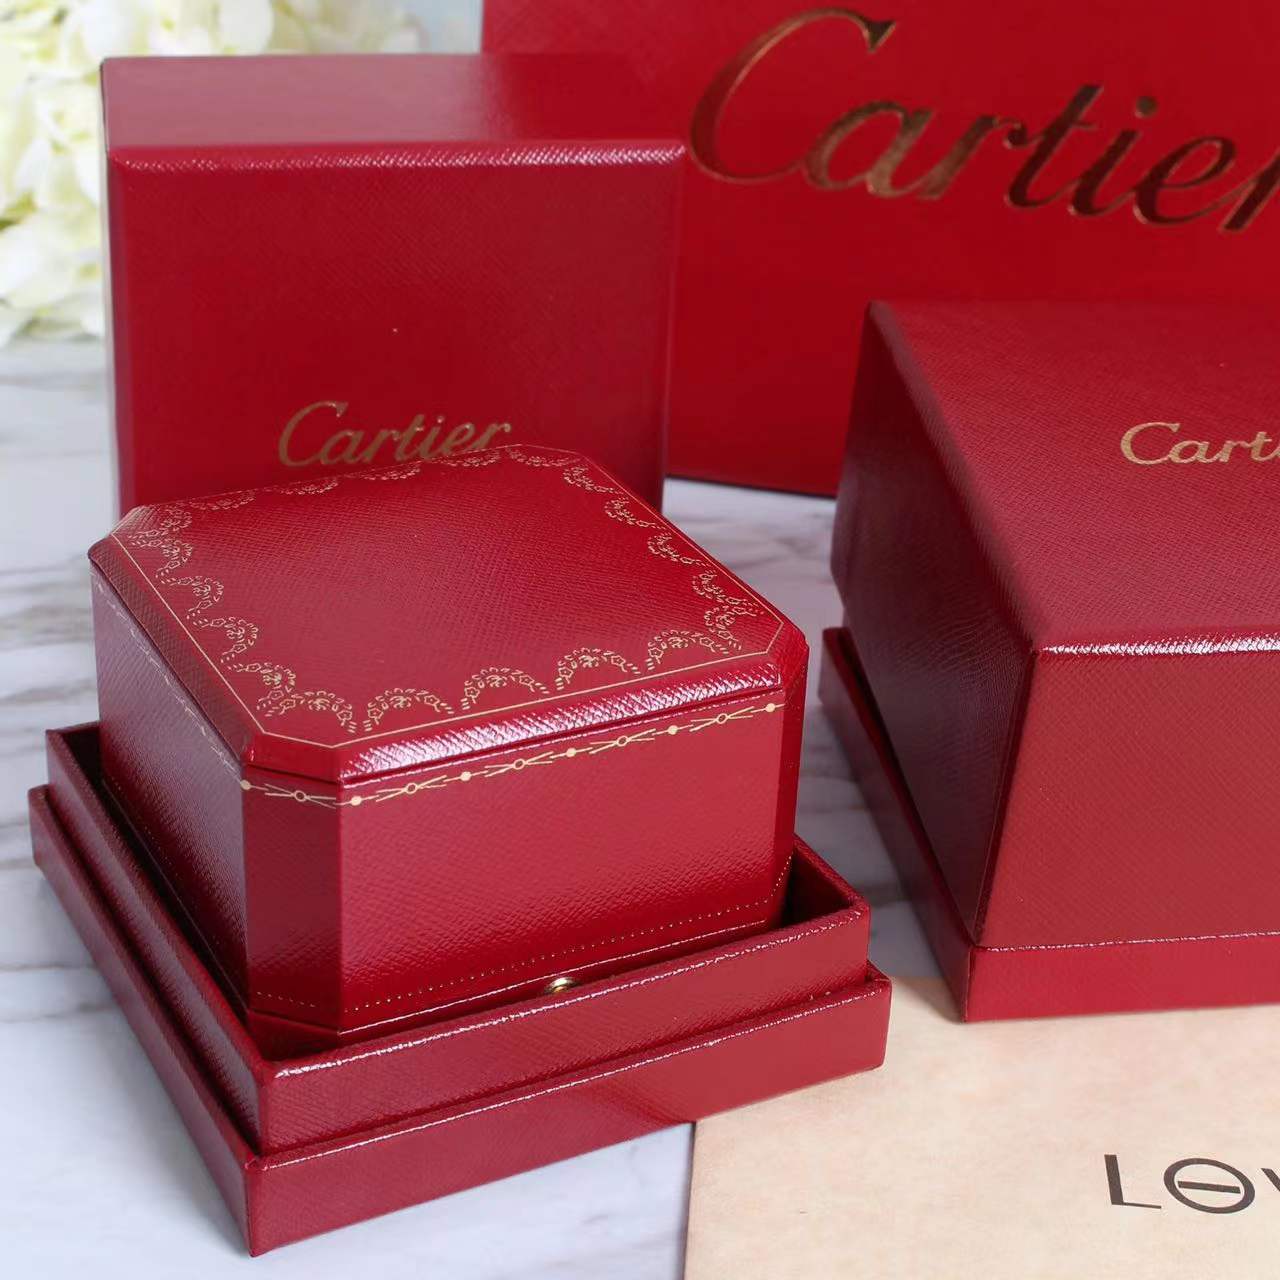 1:1 Cartier necklace box 1 set